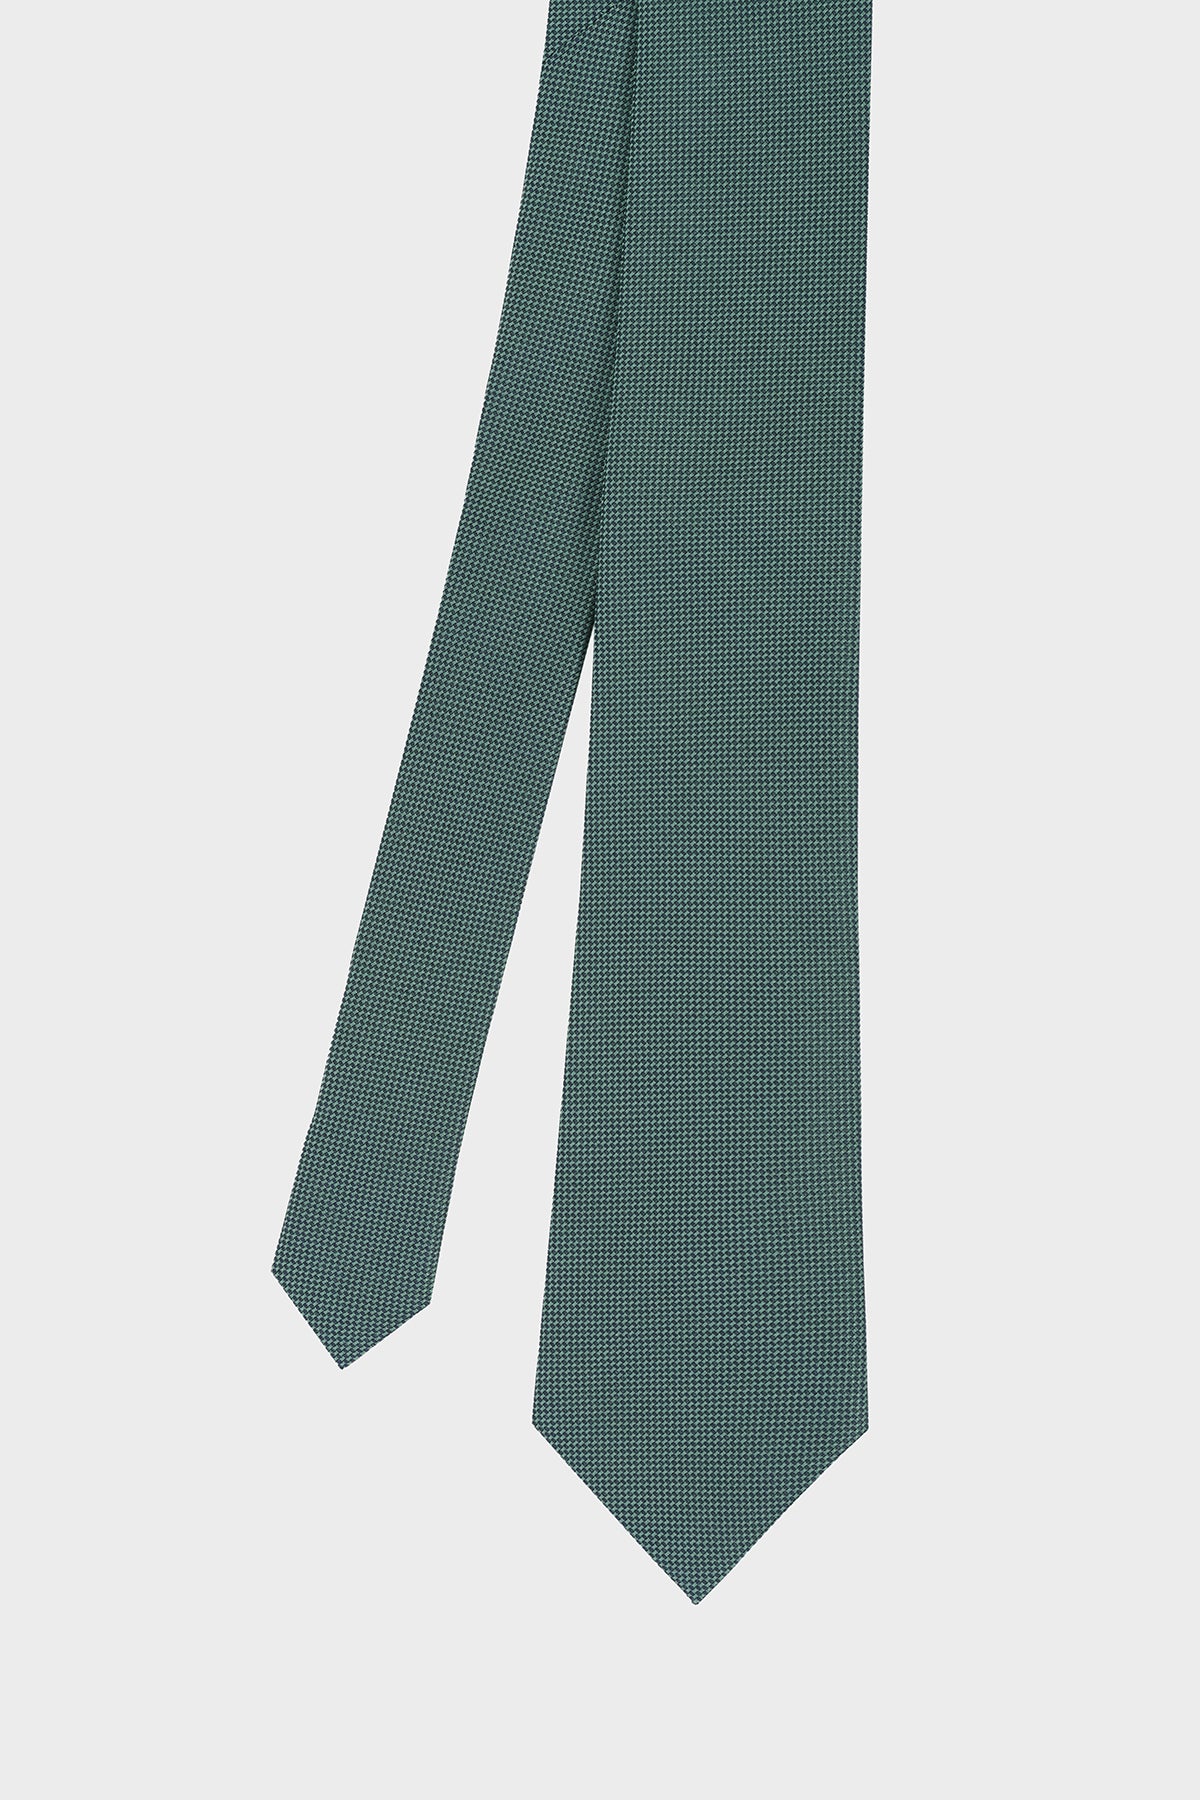 Cravate Luvia Vert